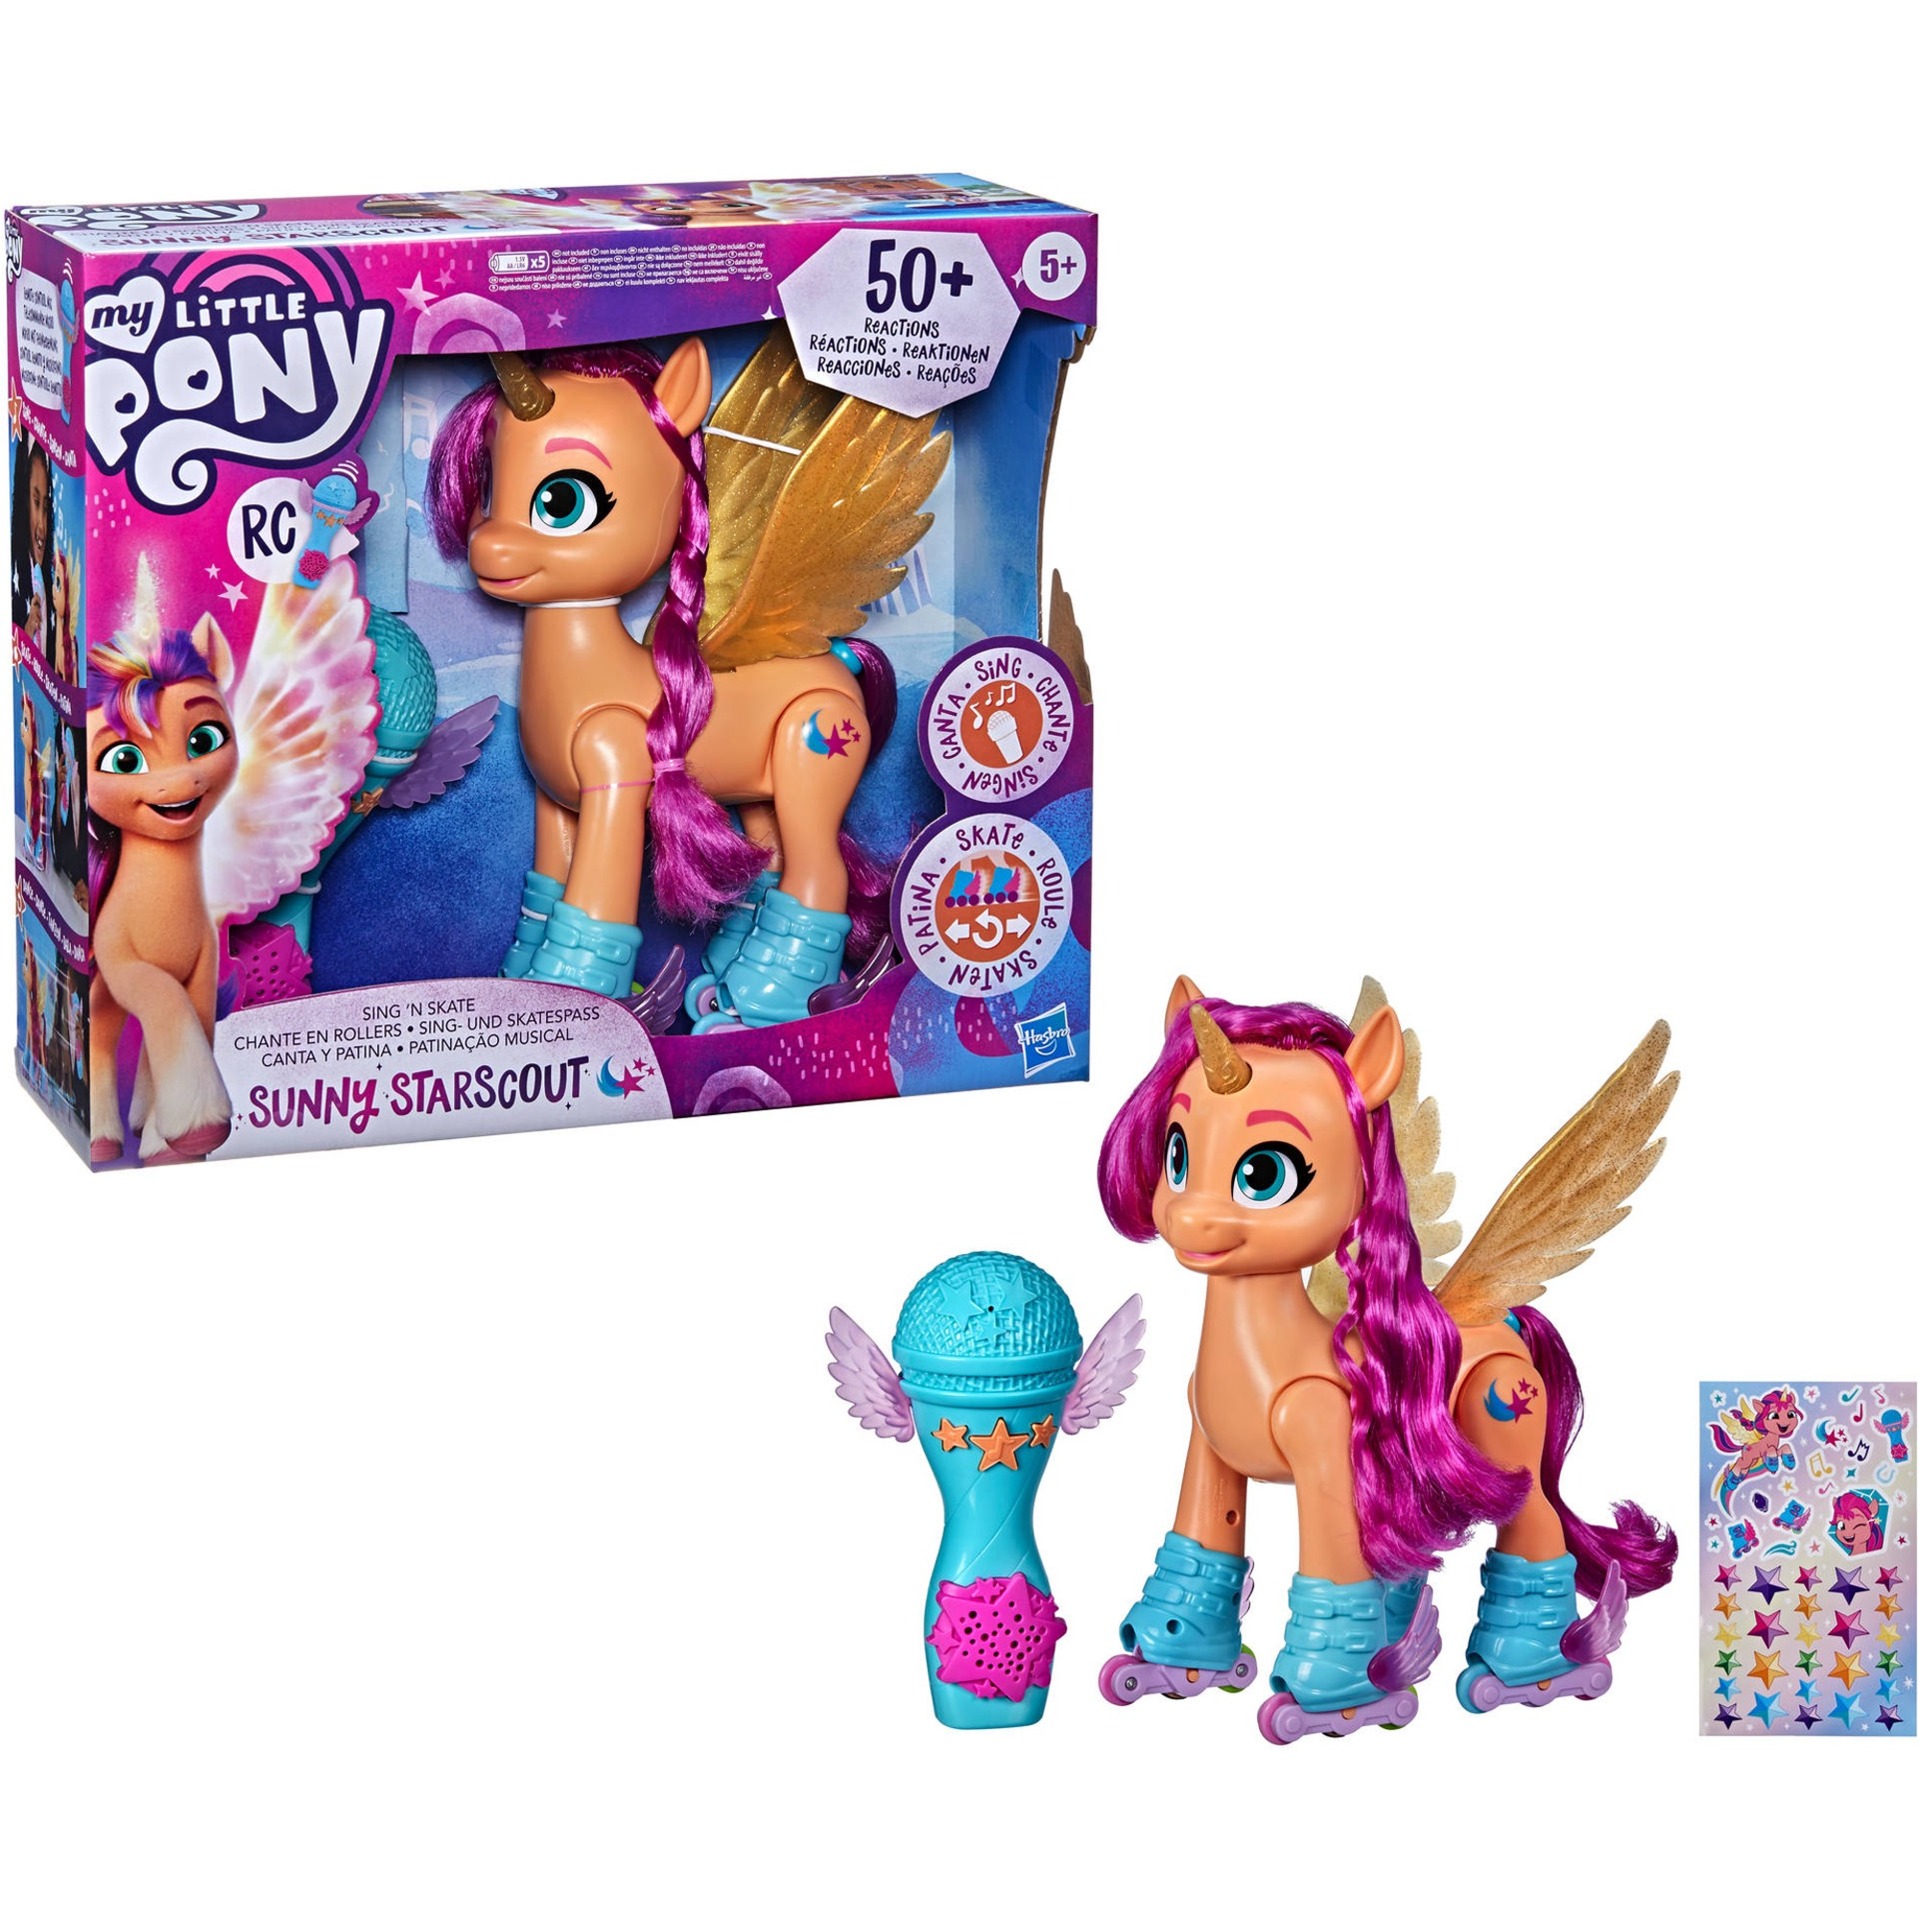 Image of Alternate - My Little Pony: A New Generation Sing- und Skatespaß Sunny Starscout, Spielfigur online einkaufen bei Alternate